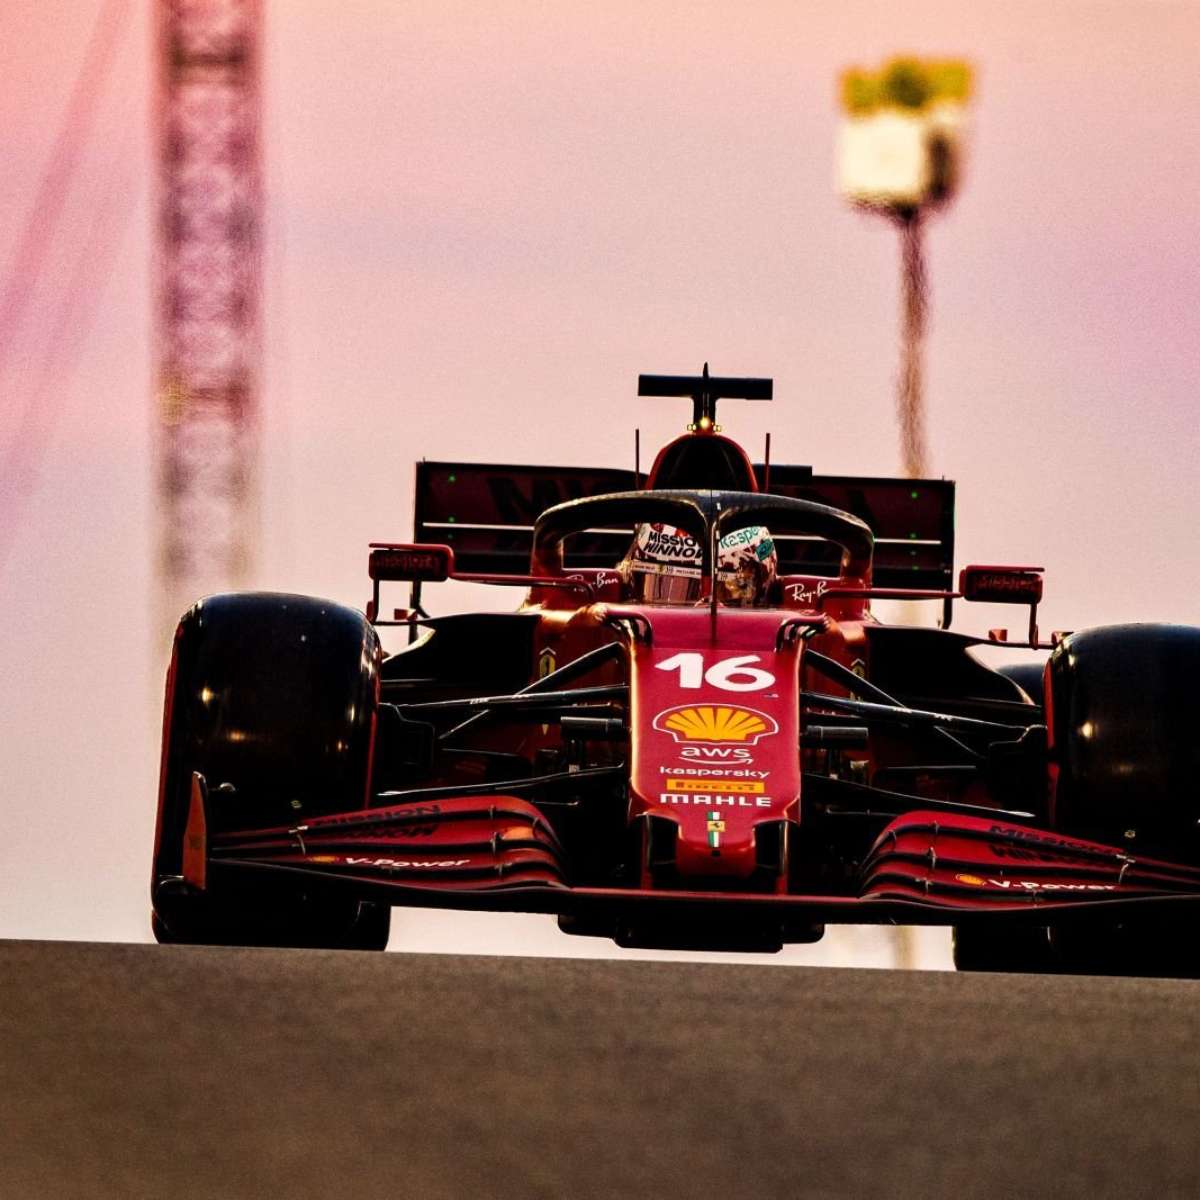 F1: Ferrari F1-75 é o novo carro da equipe para 2022 - InstaCarro